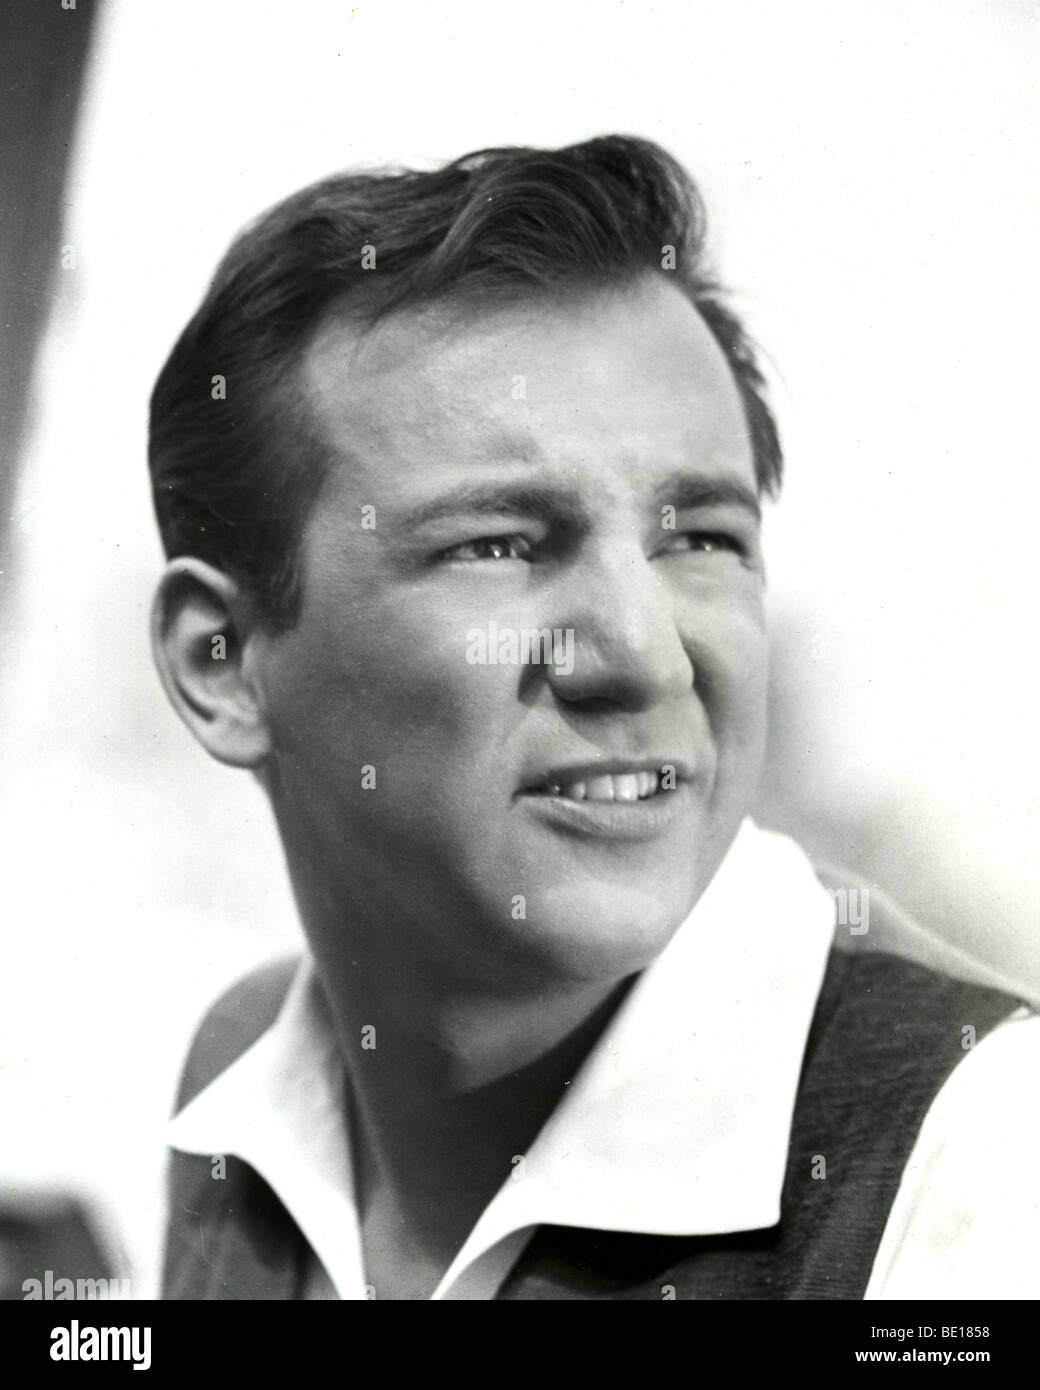 BOBBY DARIN - US cantante e attore di cinema circa 1963 Foto Stock